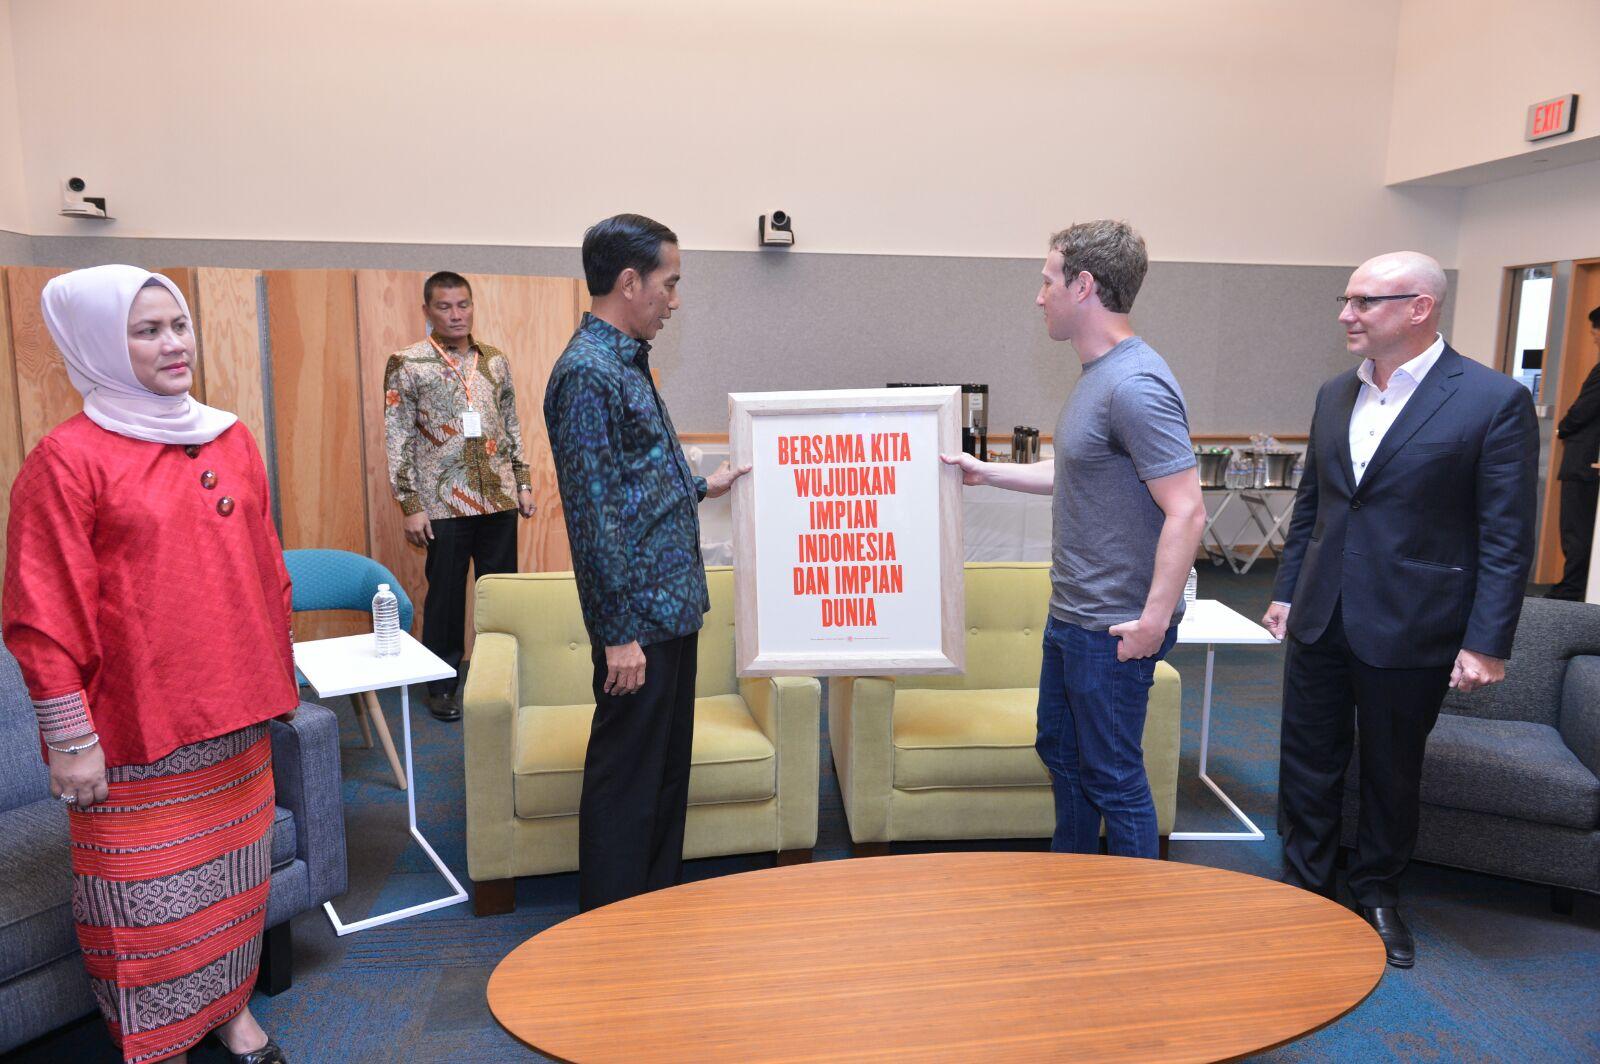 Pendapatan Facebook Indonesia di 2015 Rp2,5 Triliun, Pajaknya Bisa Ditarik?